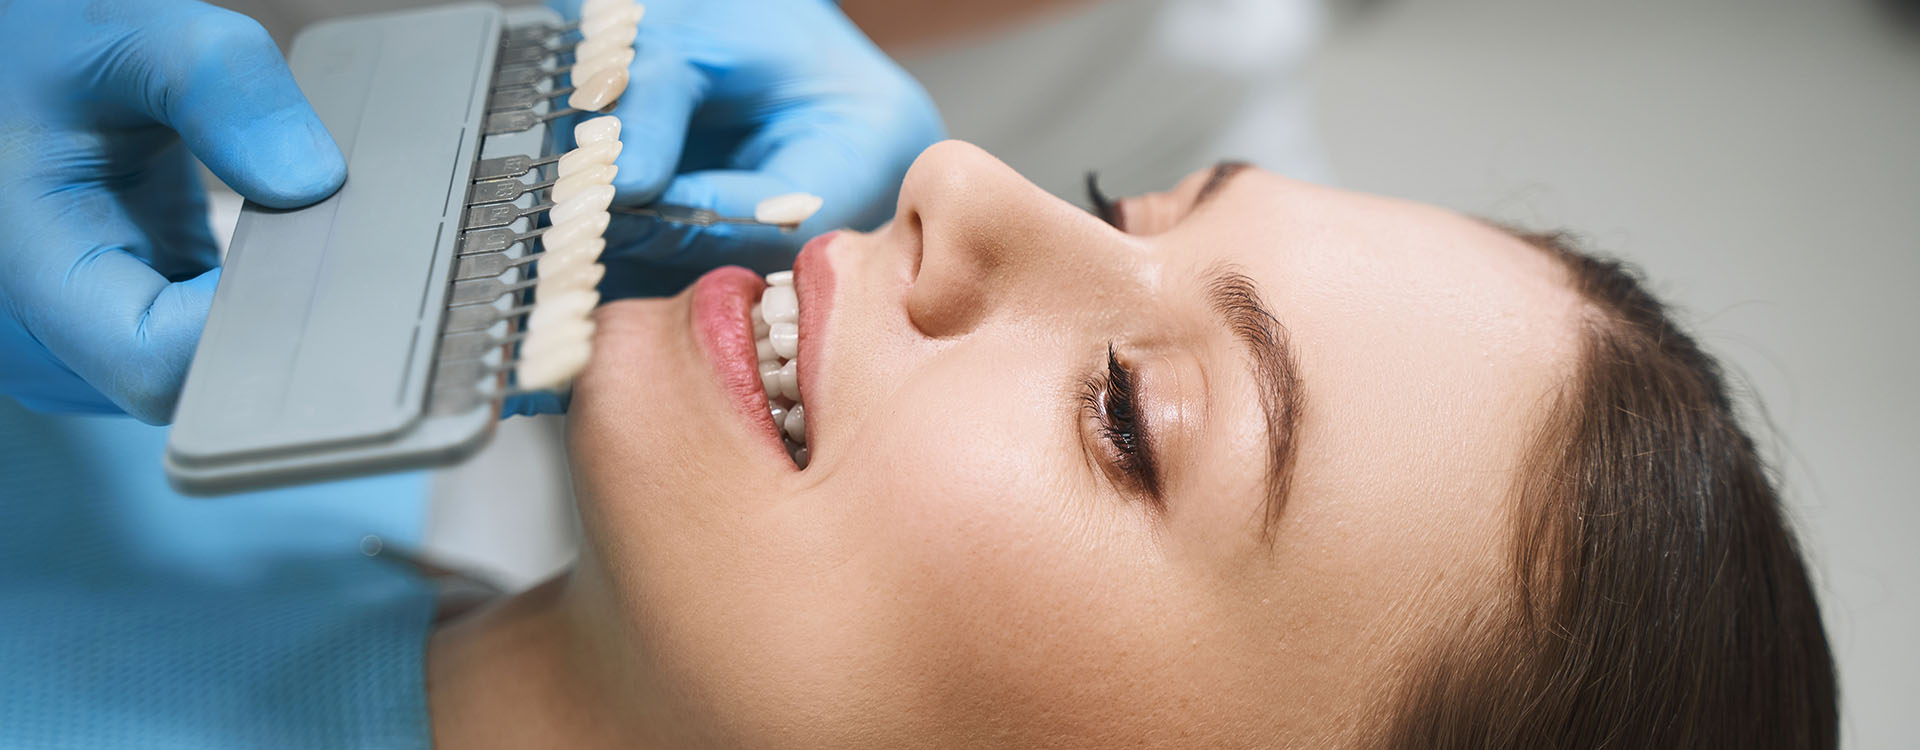 Clínica Dental Andrea Compte, tu Centro Odontológico especializado. Odontología estética en Sant Jordi. Mujer escogiendo tono para el blanqueamiento dental.